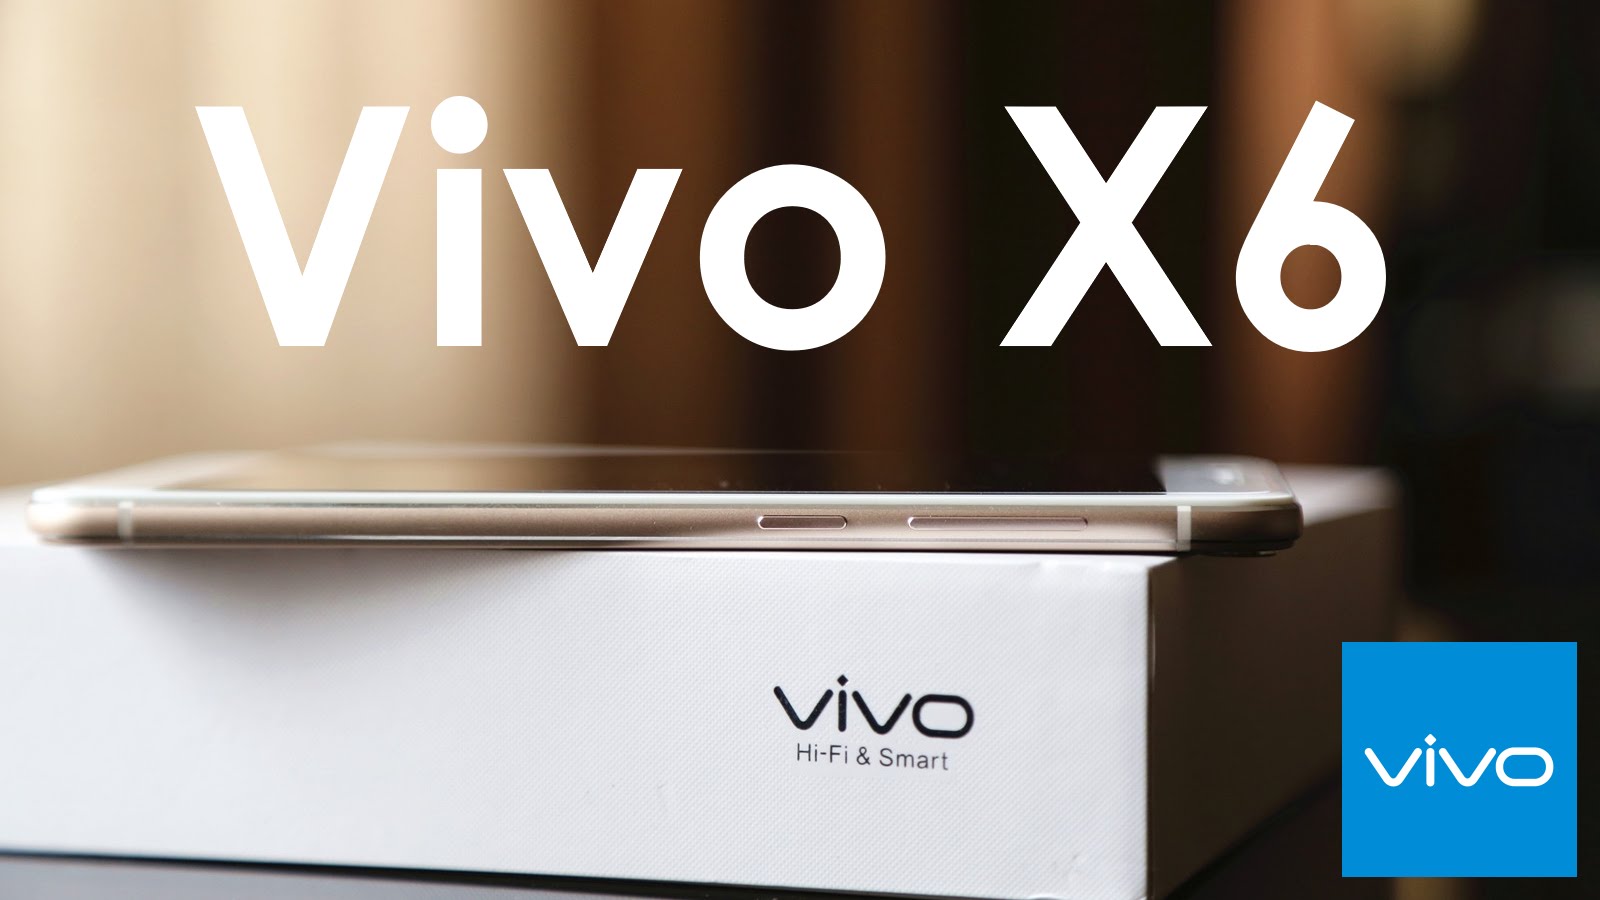 Vivo X6 Plus: anteprima dal MWC 2016 - HDblog.it